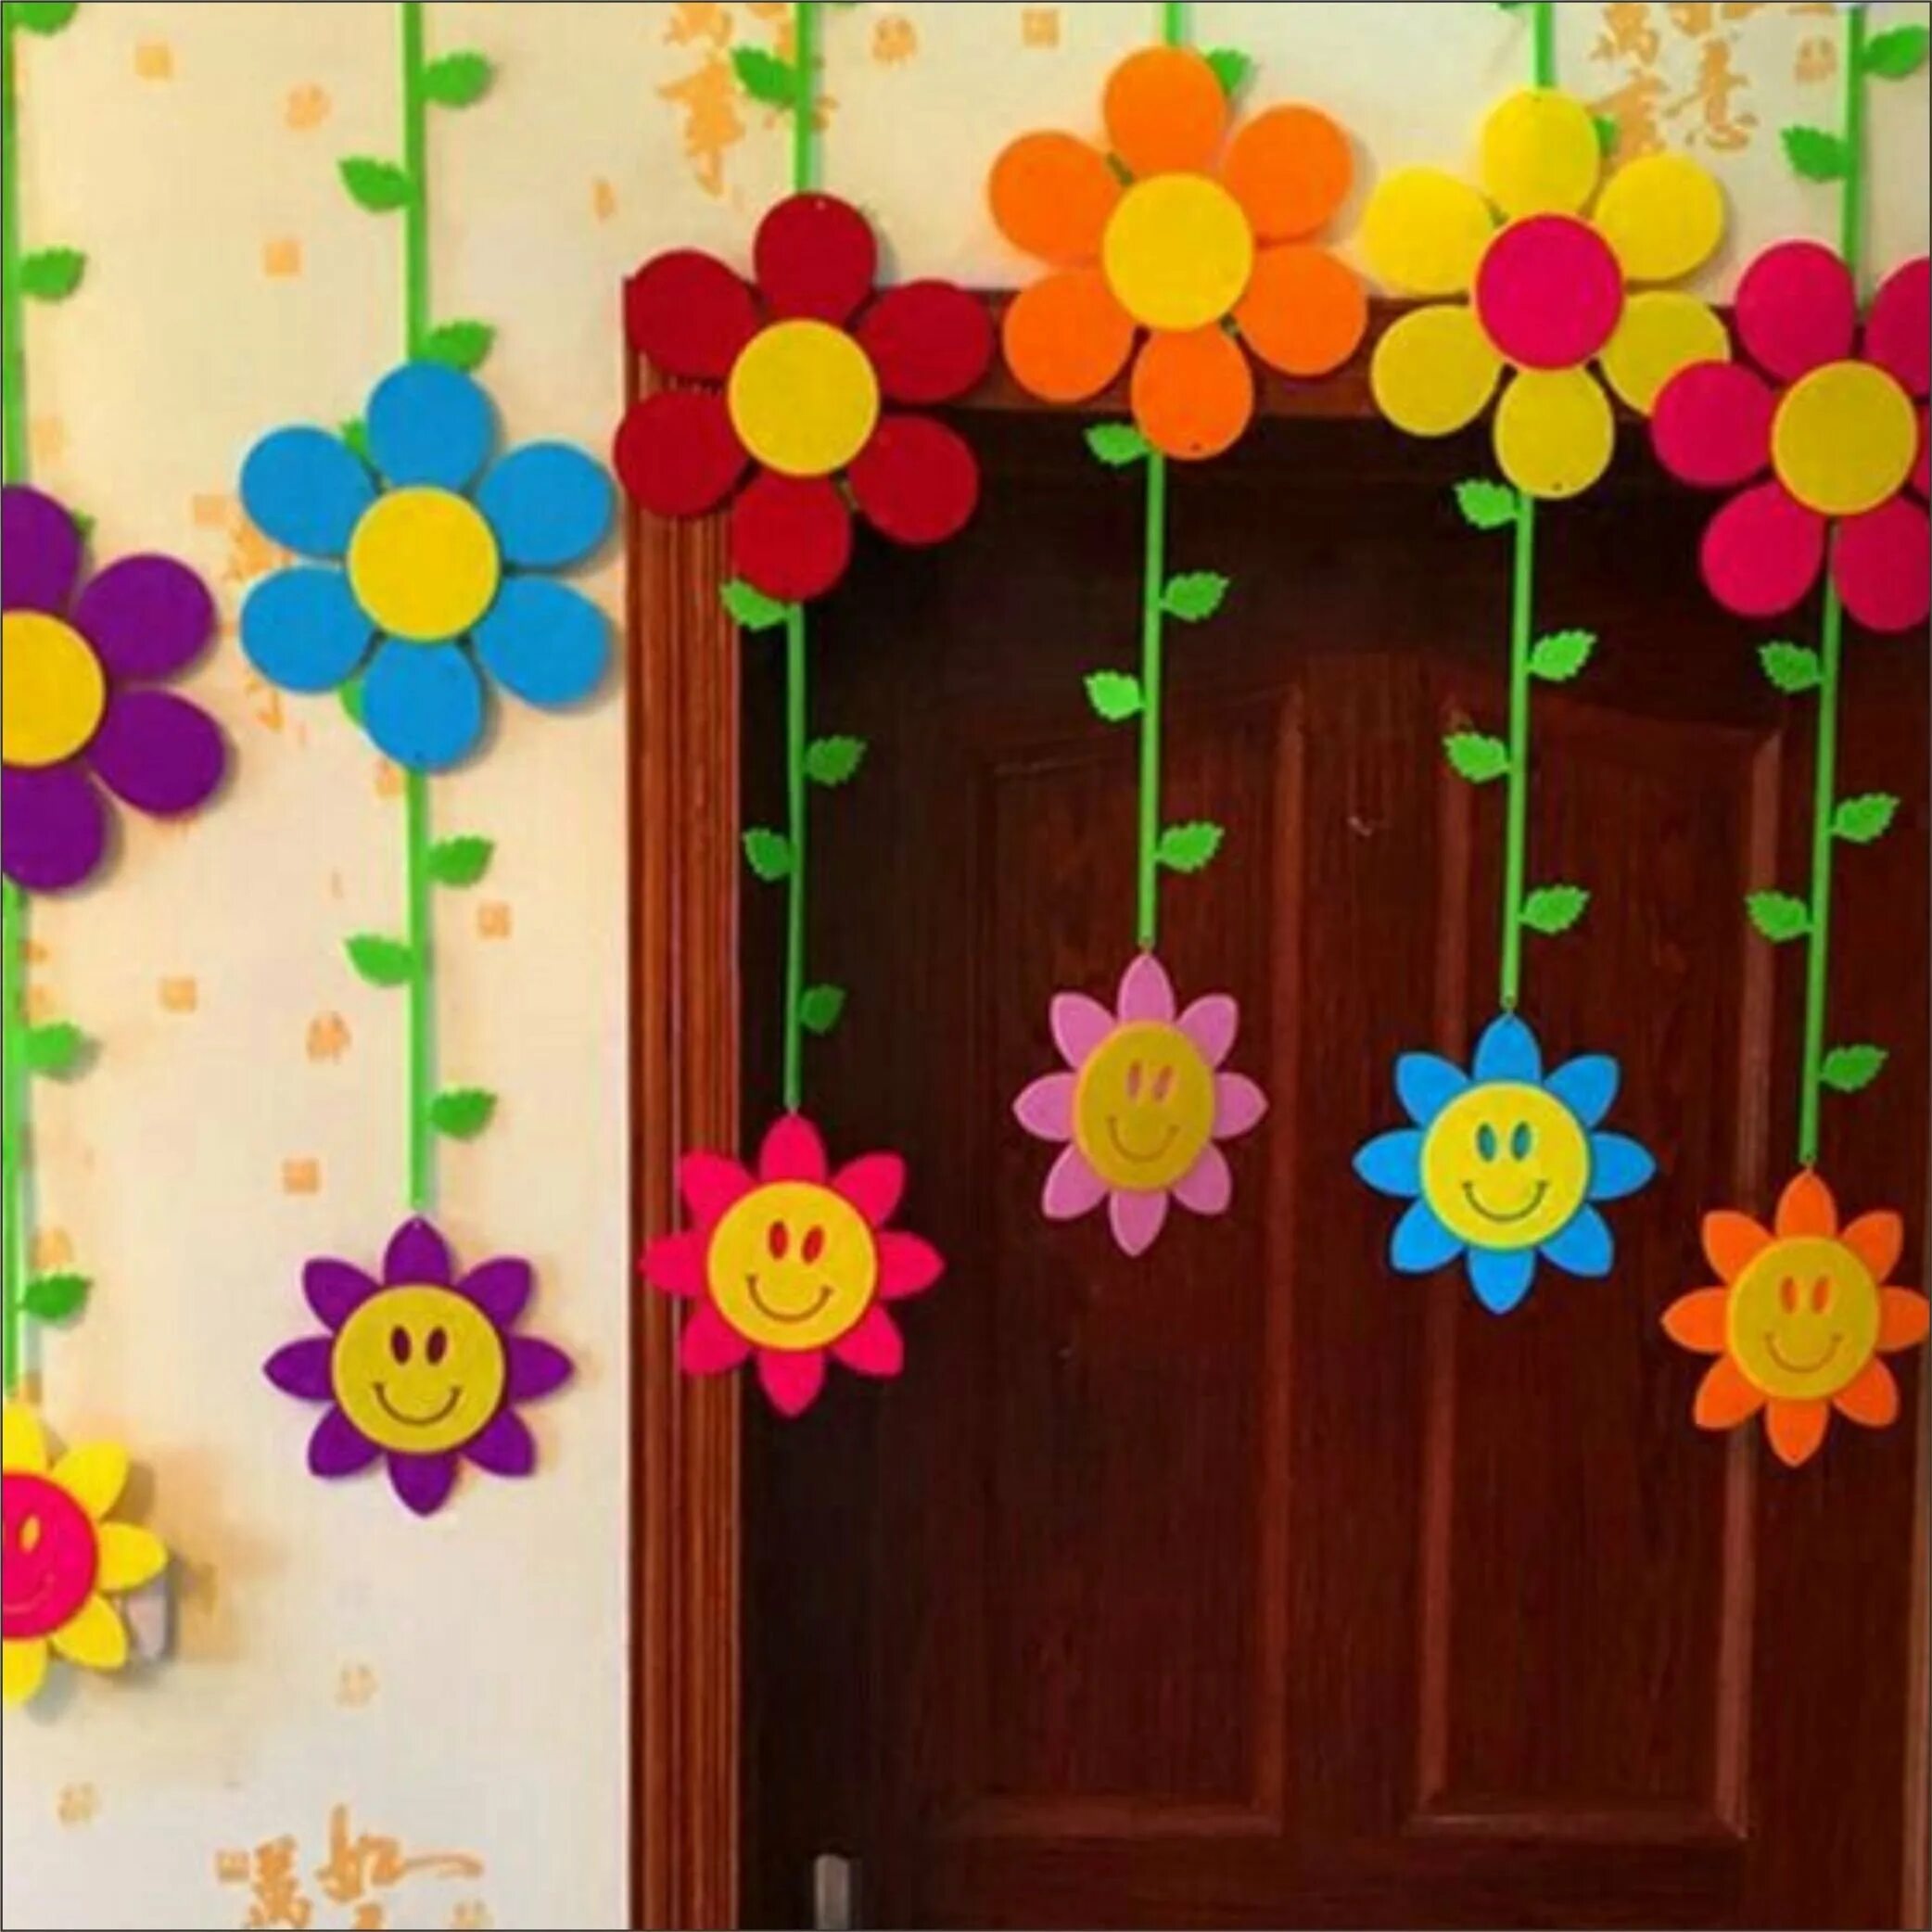 Цветы для украшения группы в детском саду. Весенние цветы для украшения группы в детском саду. Весенние цветы для декора группы в детском саду. Оформление группы в детском саду цветами